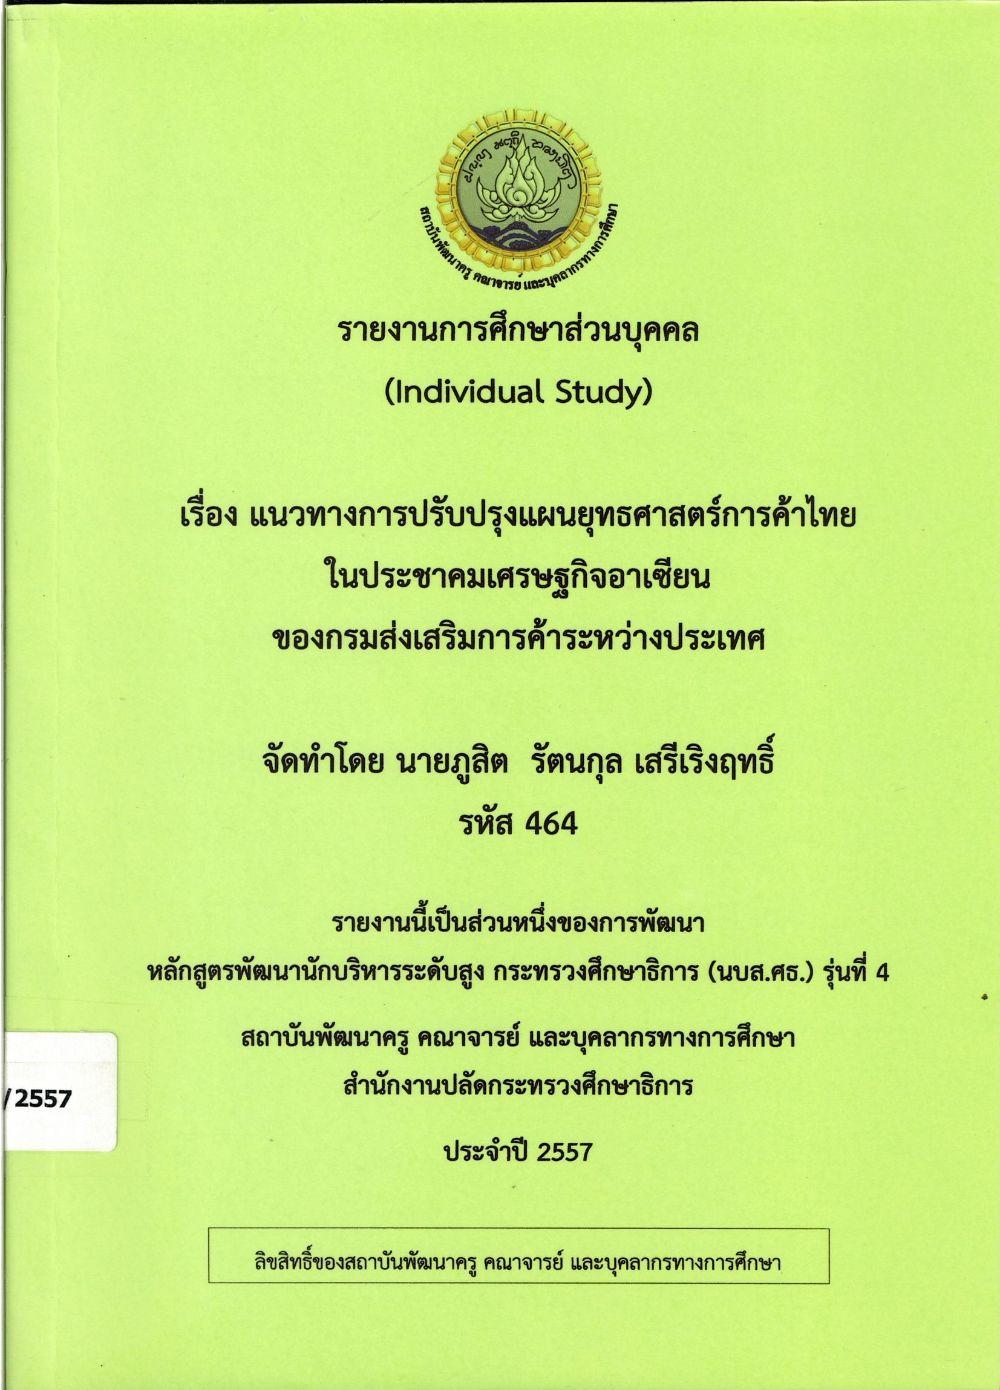 แนวทางการปรับปรุงแผนยุทธศาสตร์การค้าไทยในประชาคมเศรษฐกิจอาเซียน ของกรมส่งเสริมการค้าระหว่างประเทศ : รายงานการศึกษาส่วนบุคคล (Individual Study)/ ภูสิต รัตนกุล เสรีเริงฤทธิ์